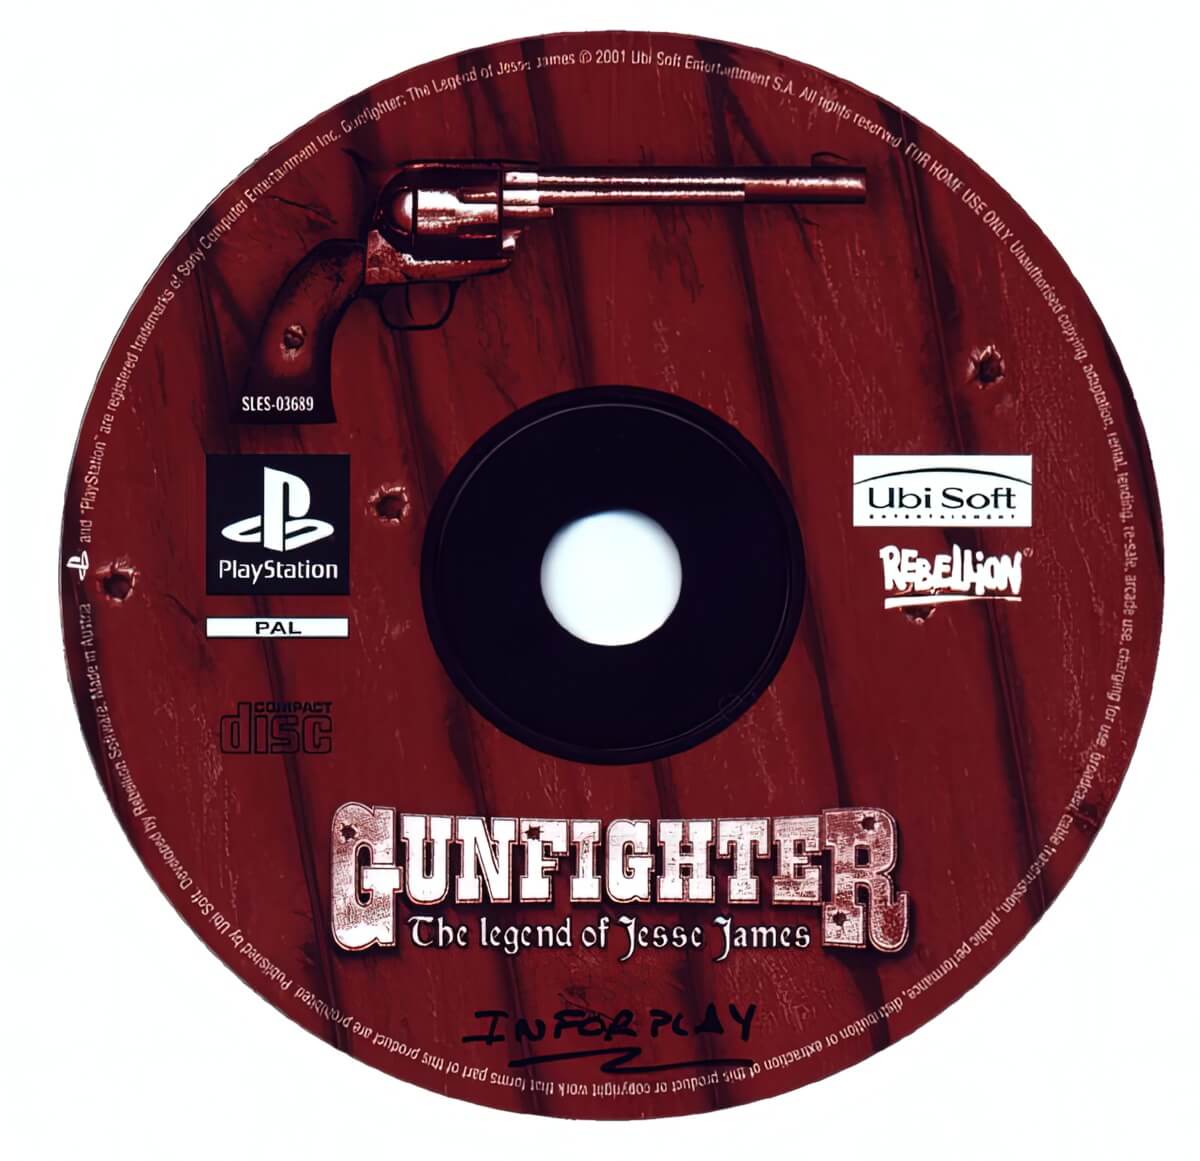 Лицензионный диск Gunfighter The Legend of Jesse James для PlayStation